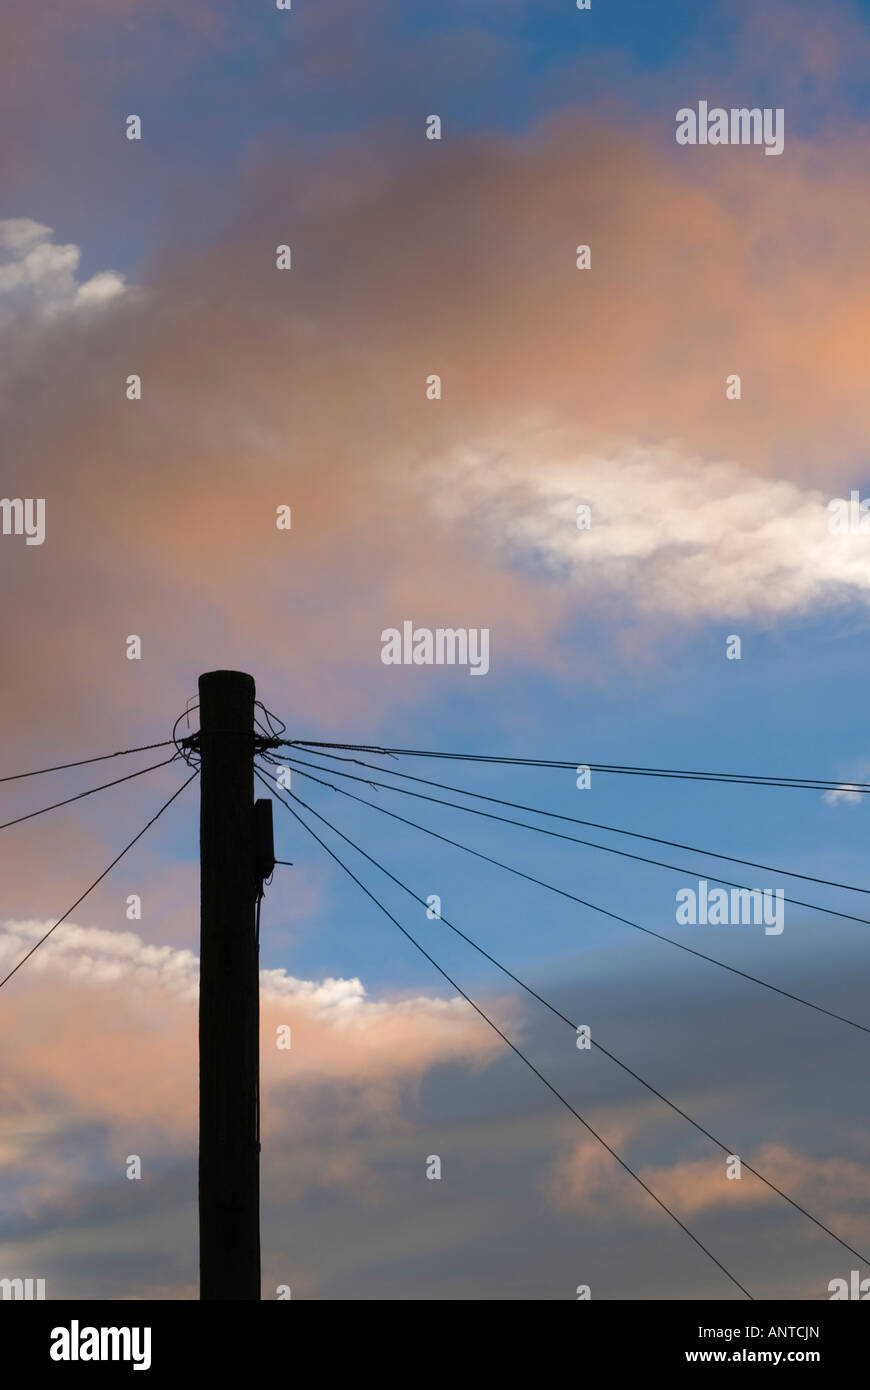 Telefonkabel und Telegrafenmast Silhouette gegen einen blauen Himmel und Jet trails Stockfoto